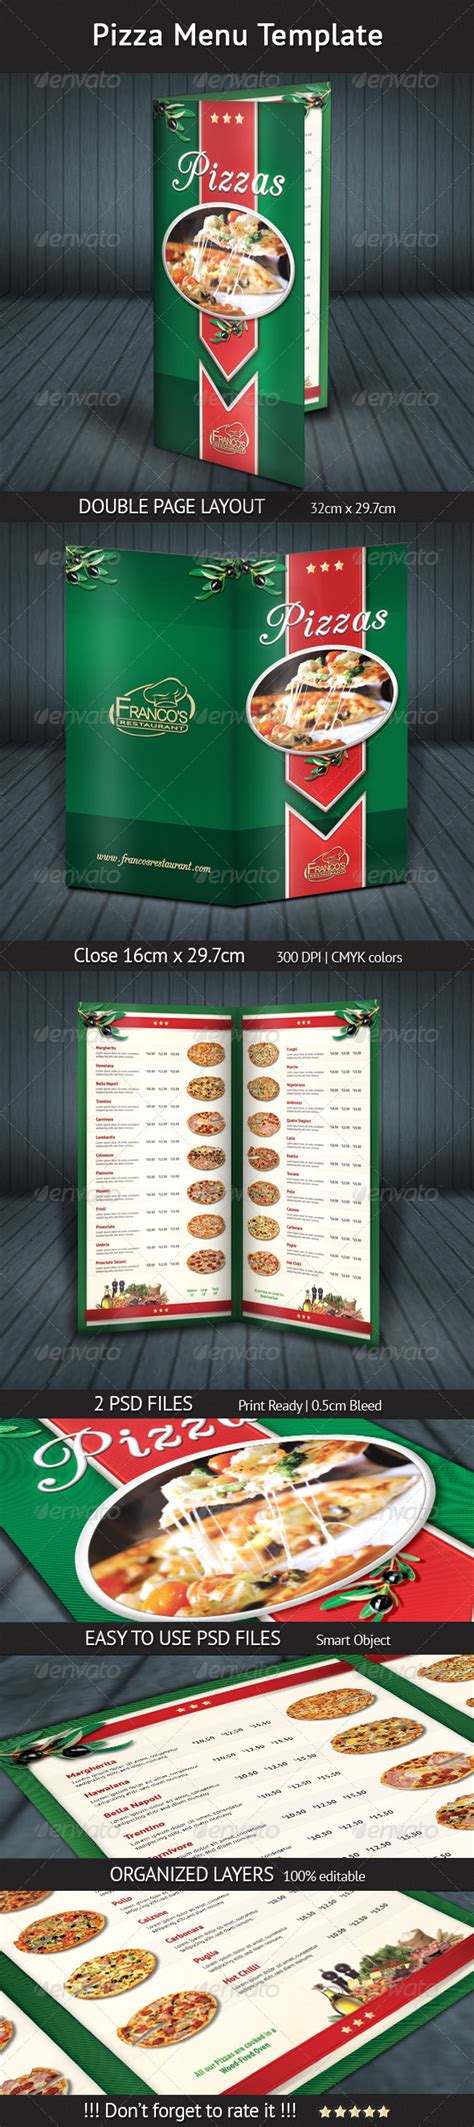 pizza menu template graphicriver